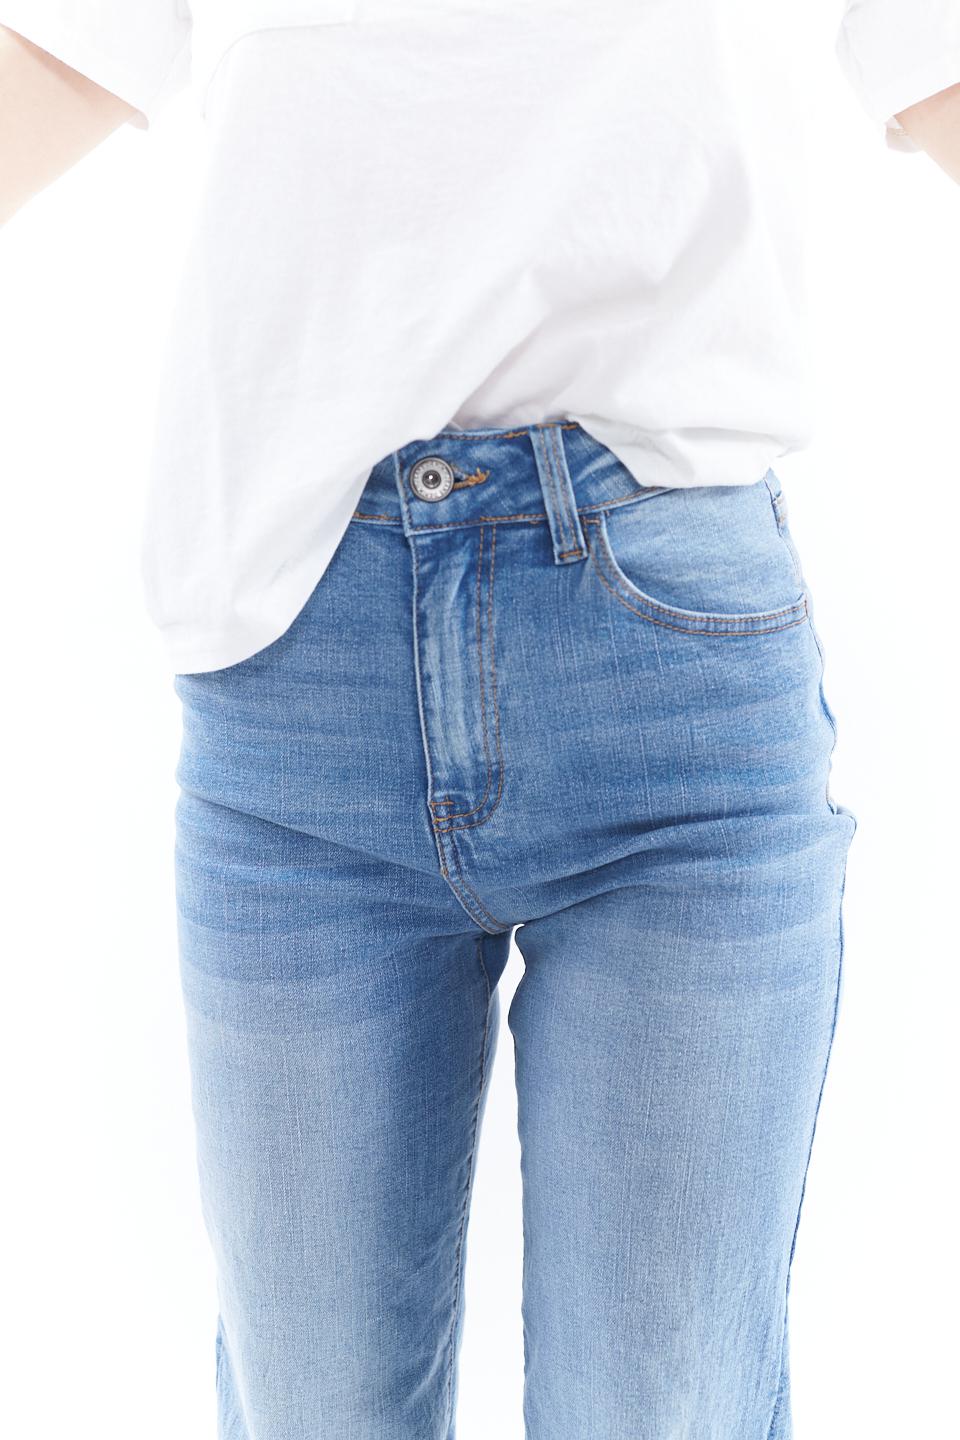 Jeans wide leg denim slavato - Primavera Estate 2023 | Brend